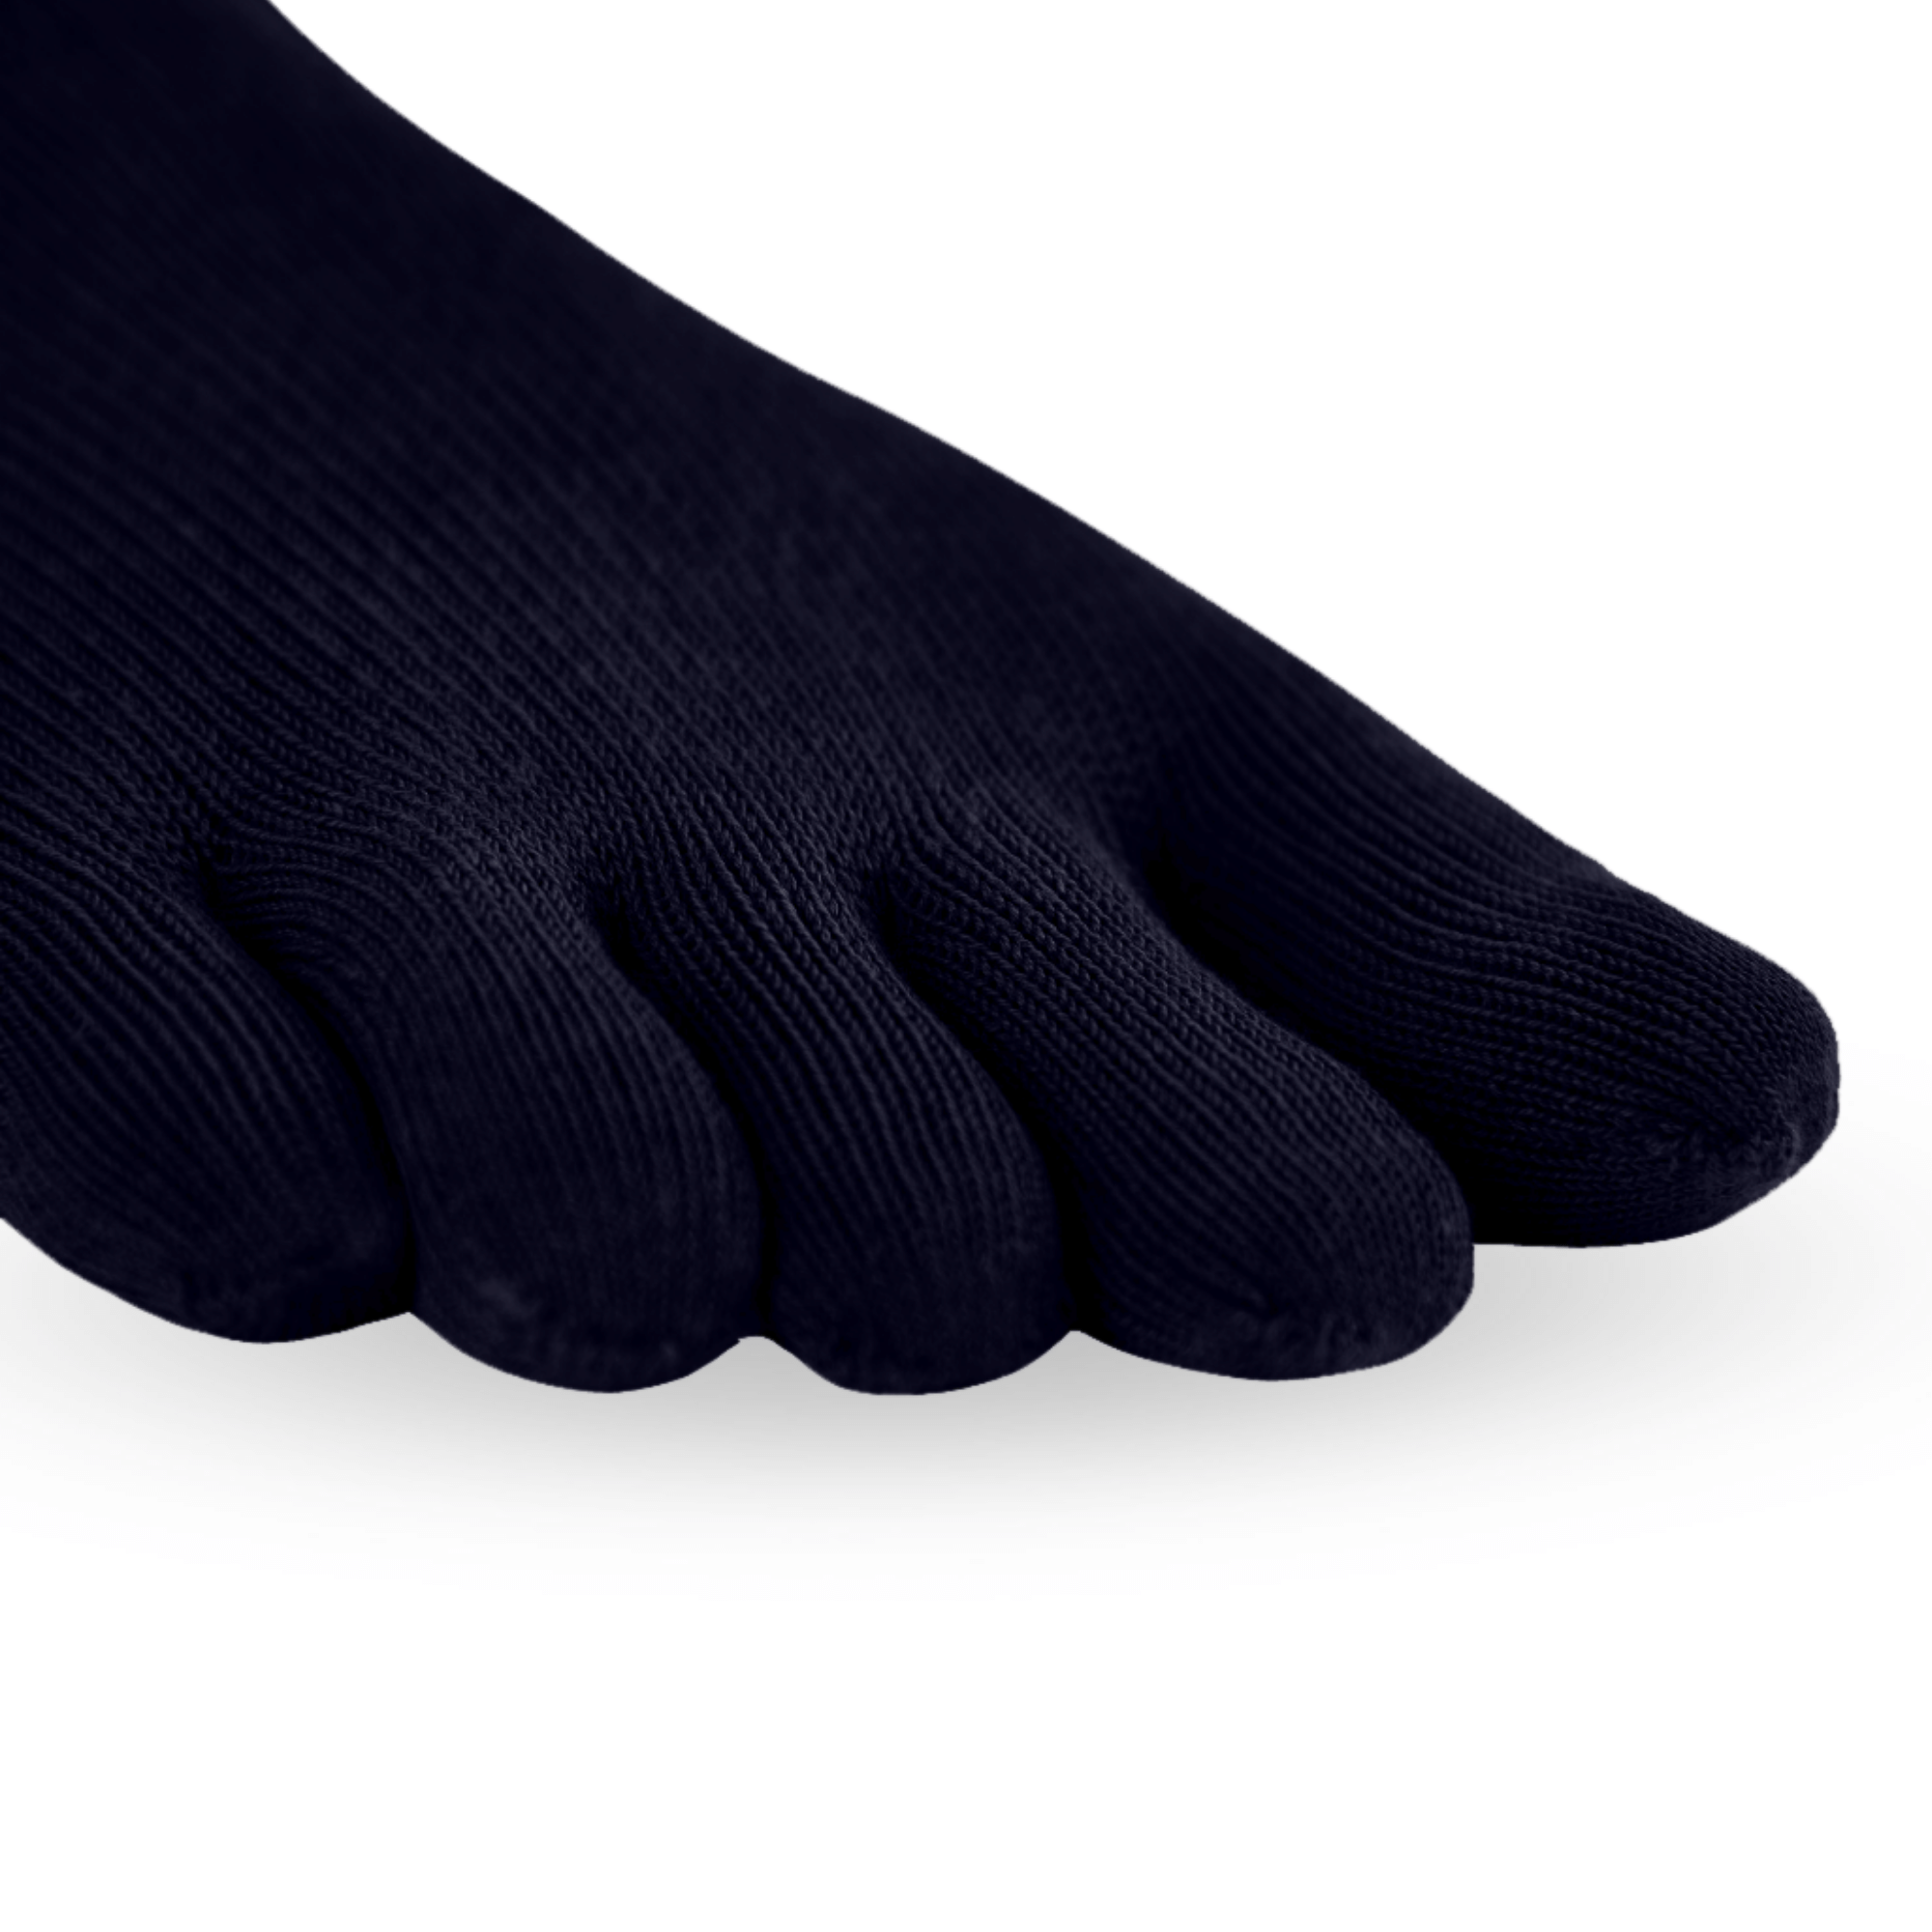 Knitido Silver Protect Midi - calcetines cortos con fibra de plata antimicrobiana para hombres y mujeres